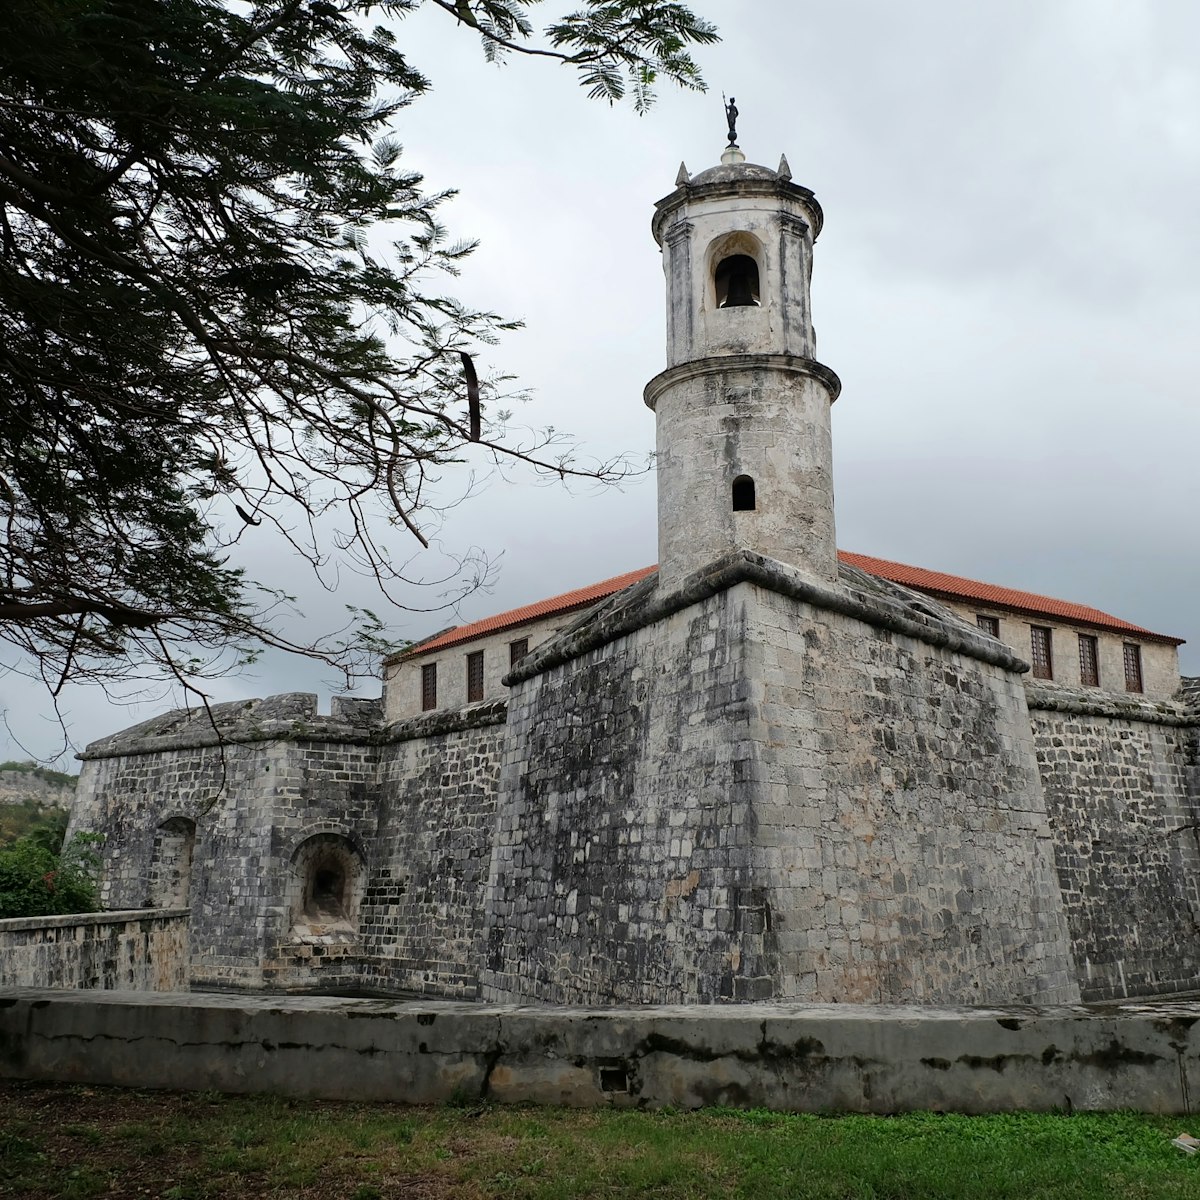 Castillo de la Real Fuerza guarded the entrance of the Havana Bat back in the 16th Century.